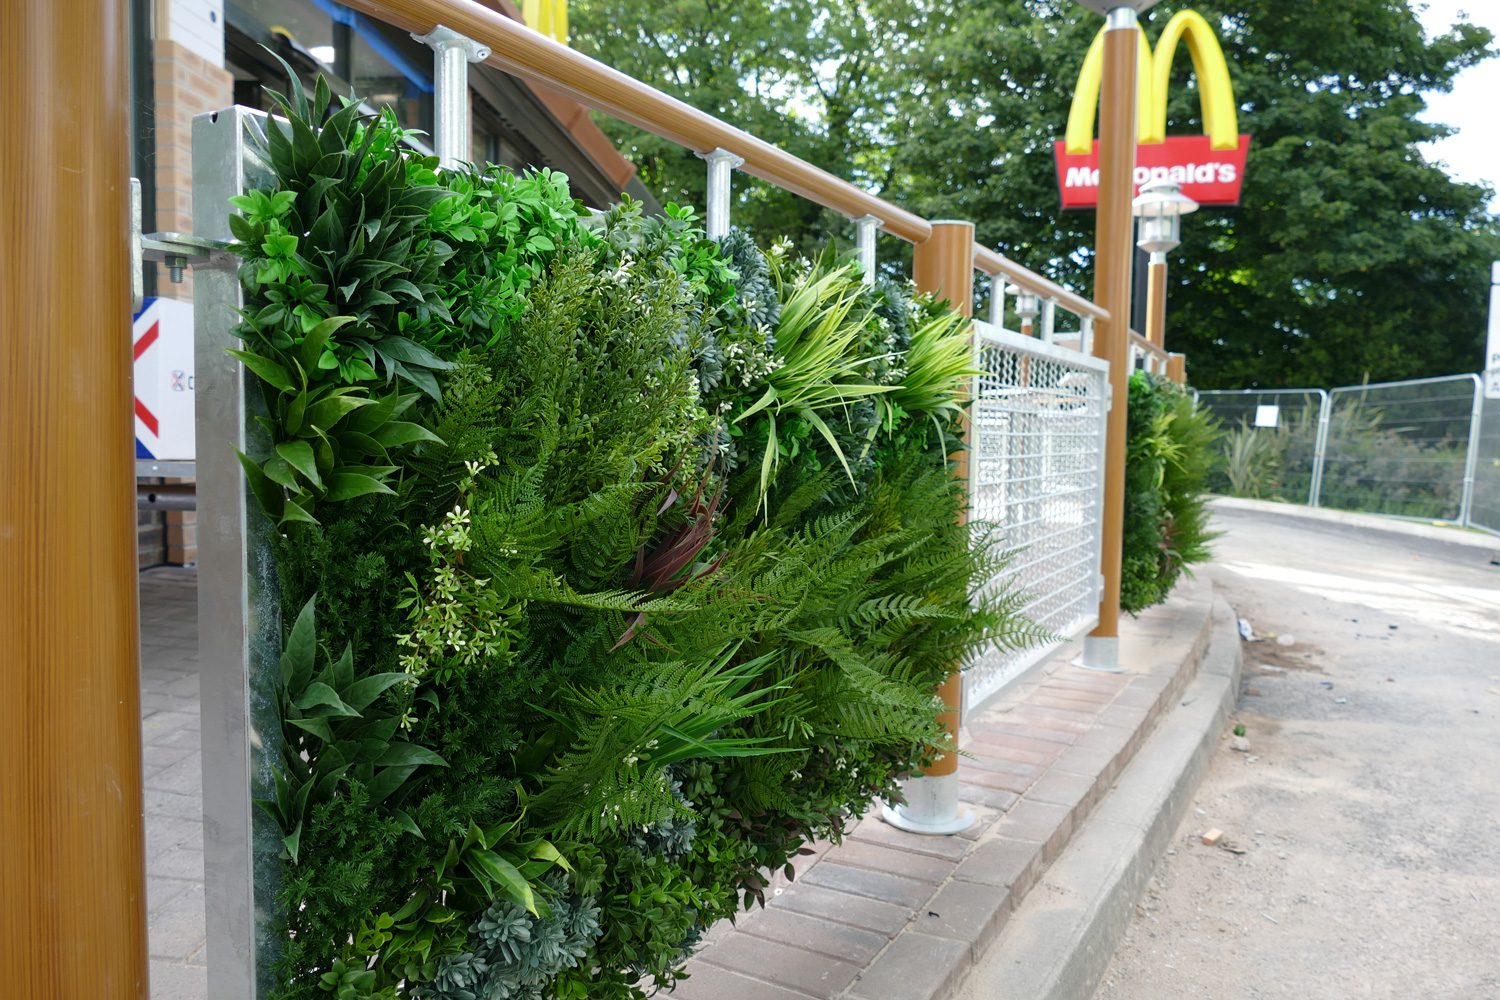 McDonalds After Artificial Green Wall Panels